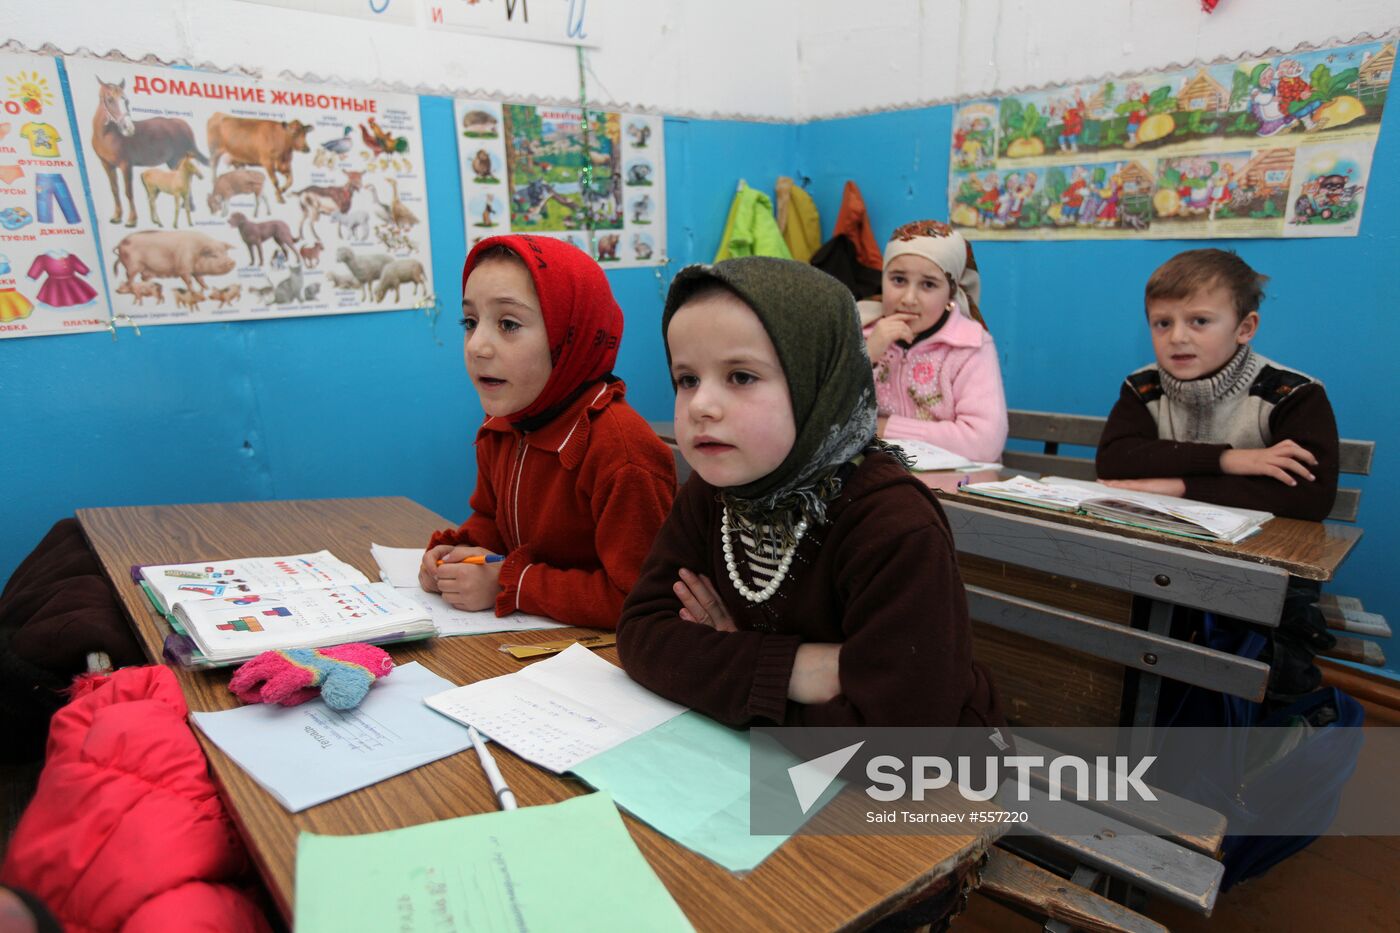 Village school in Dagestan